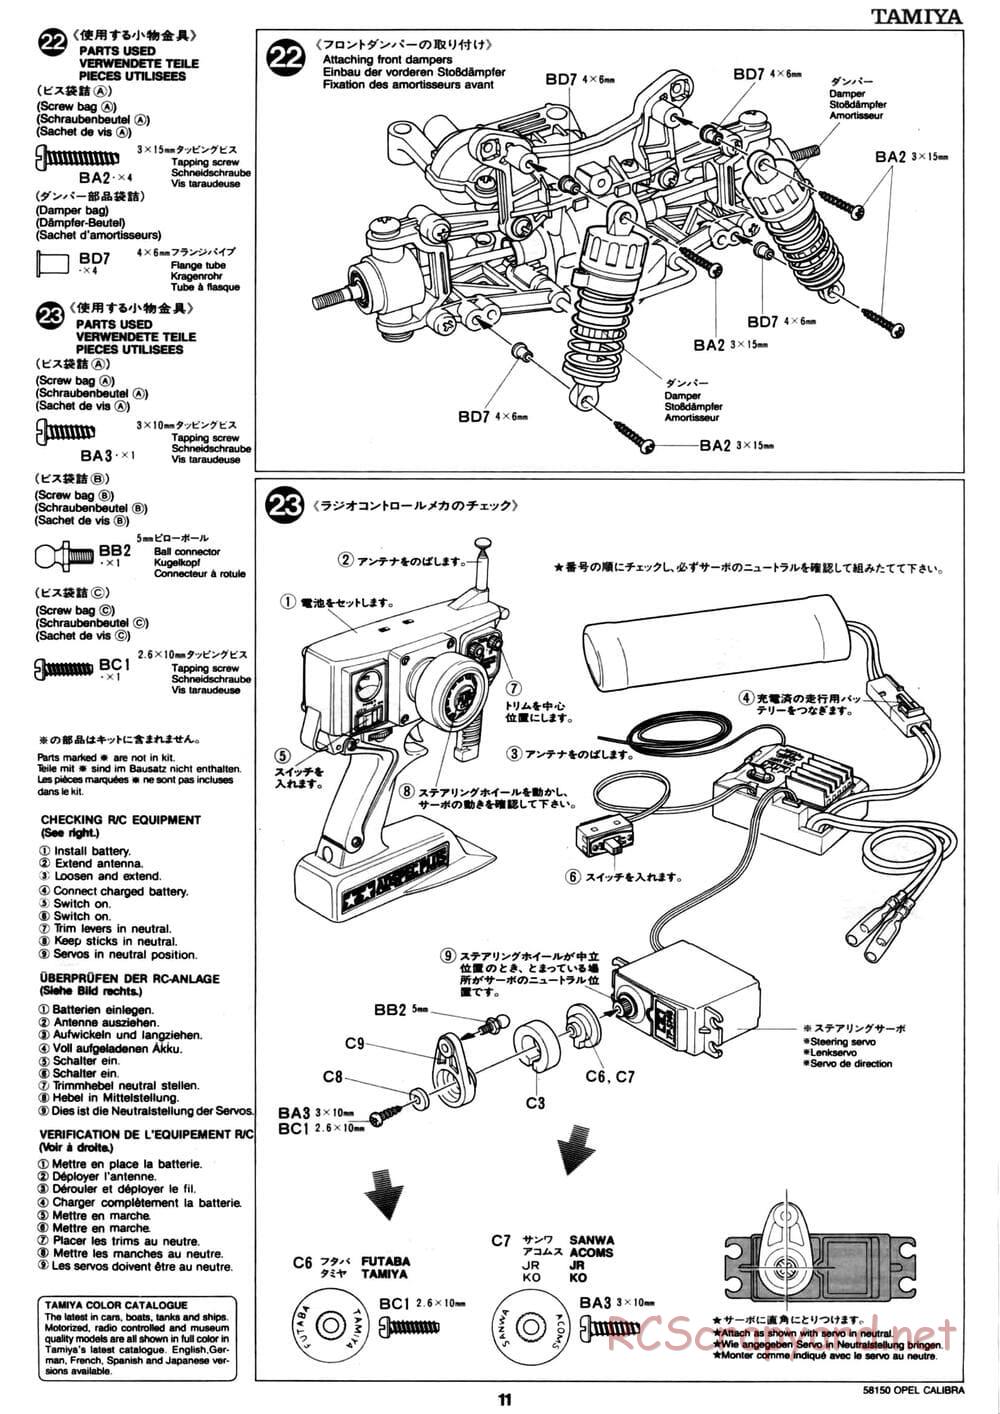 Tamiya - Opel Calibra V6 DTM - TA-02 Chassis - Manual - Page 11